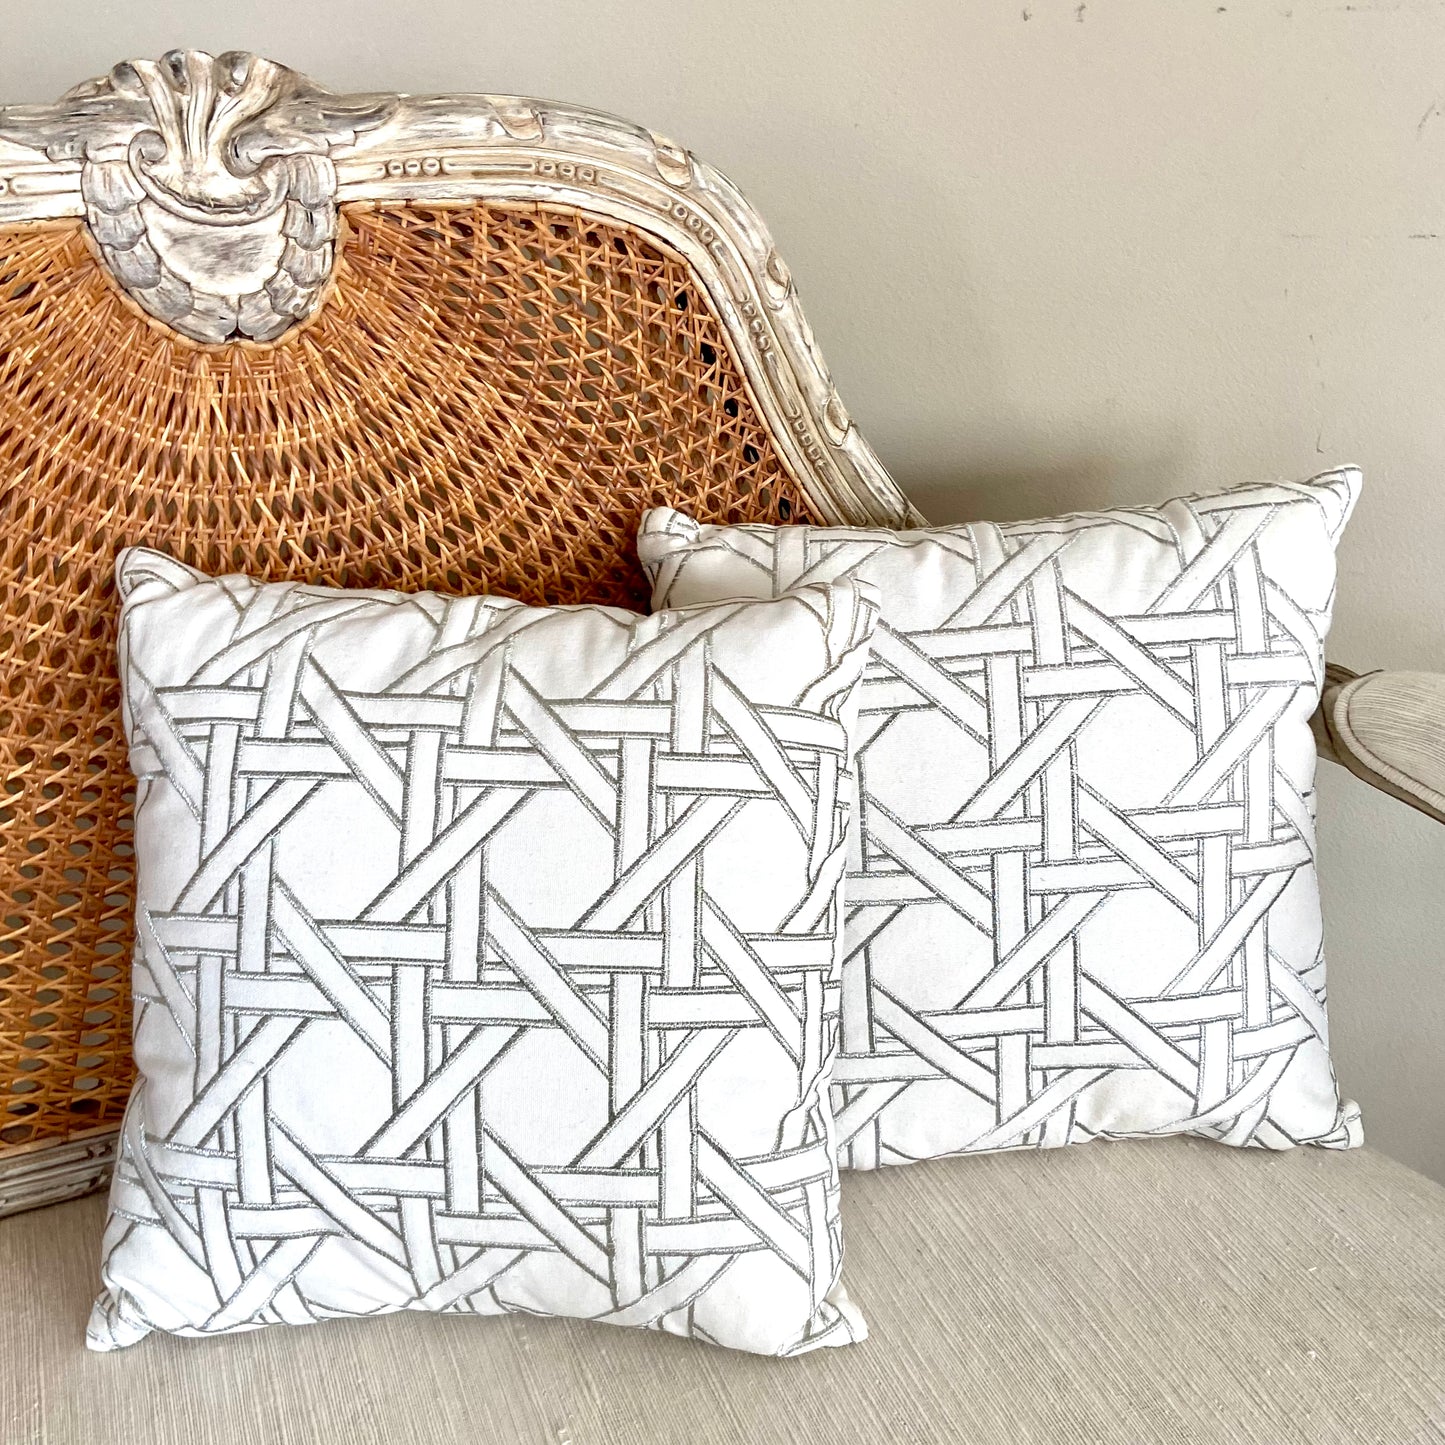 Designer Pair (2) cane throw pillow, white/grey, 16x16” - Pristine!